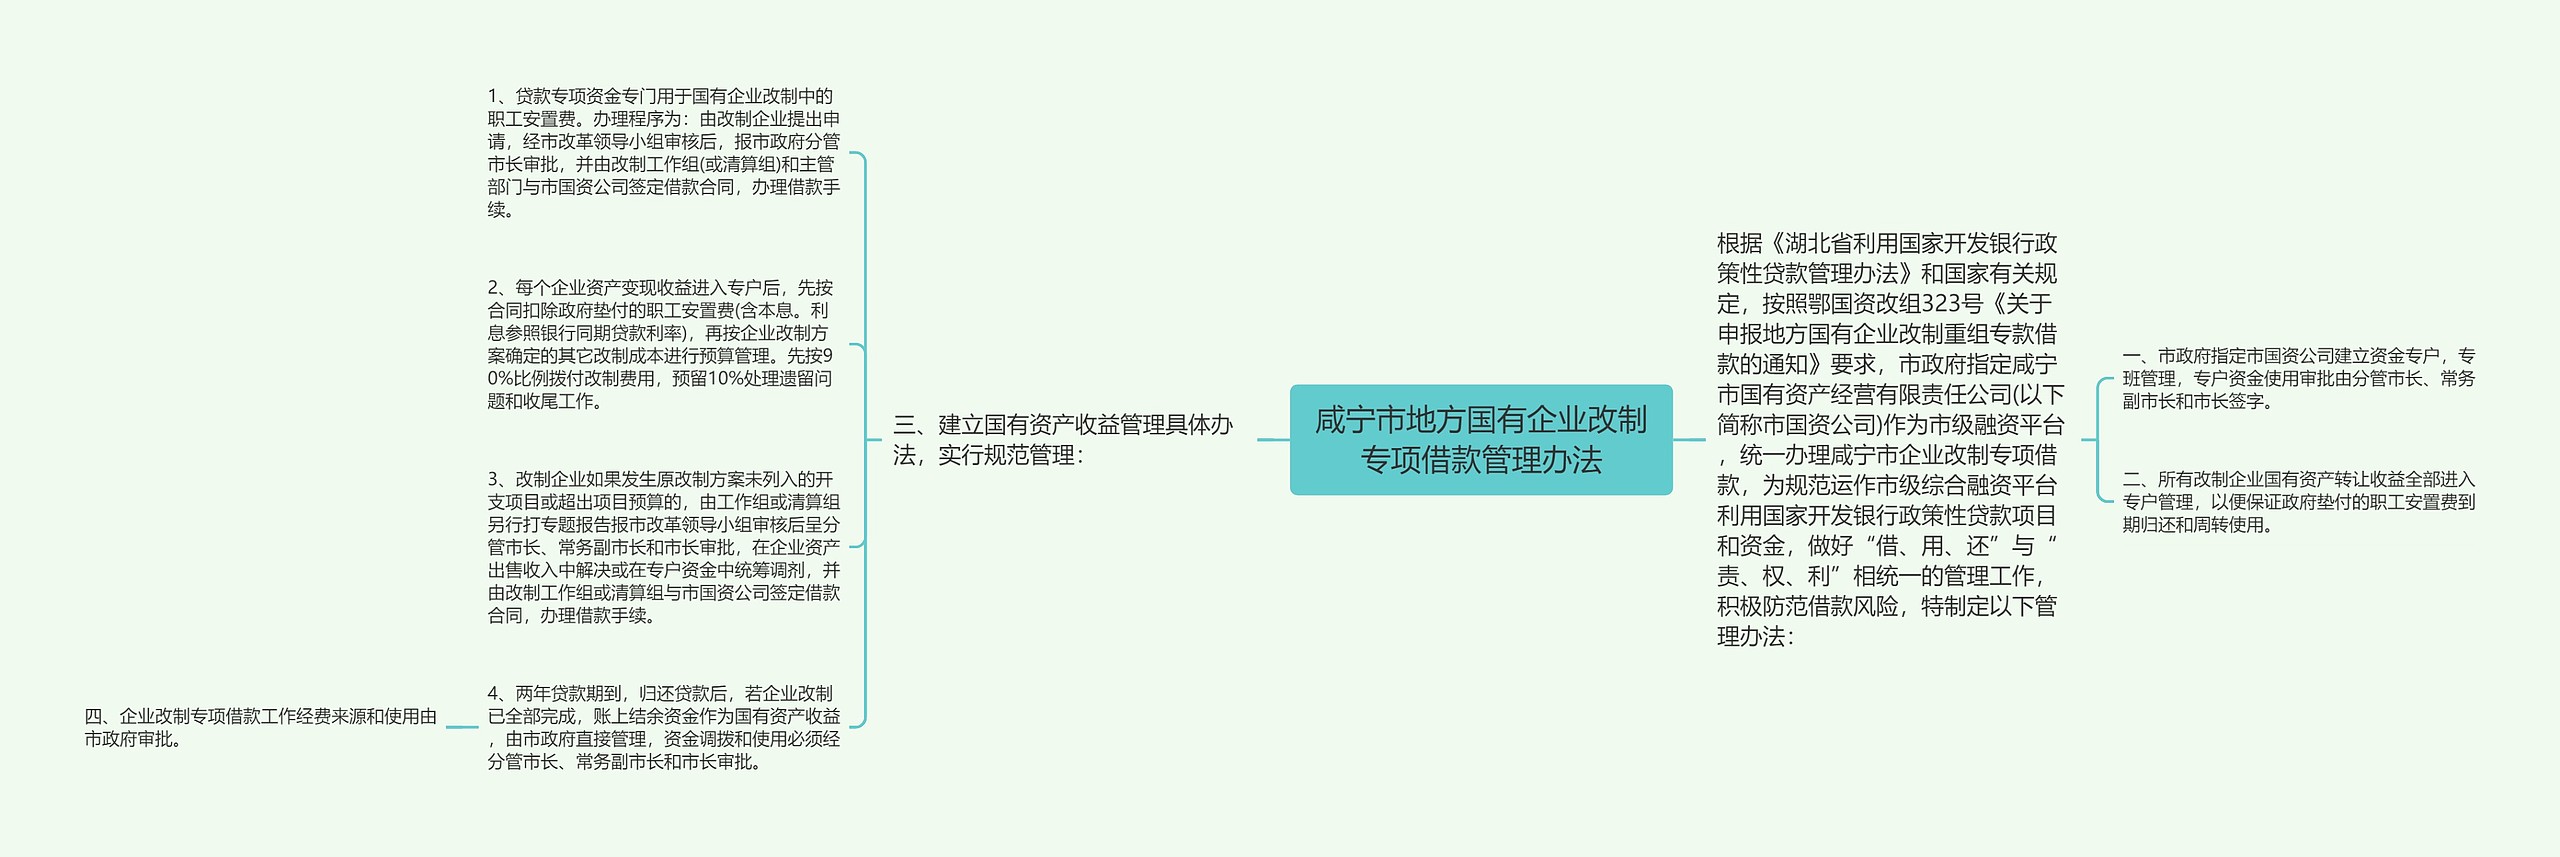 咸宁市地方国有企业改制专项借款管理办法思维导图